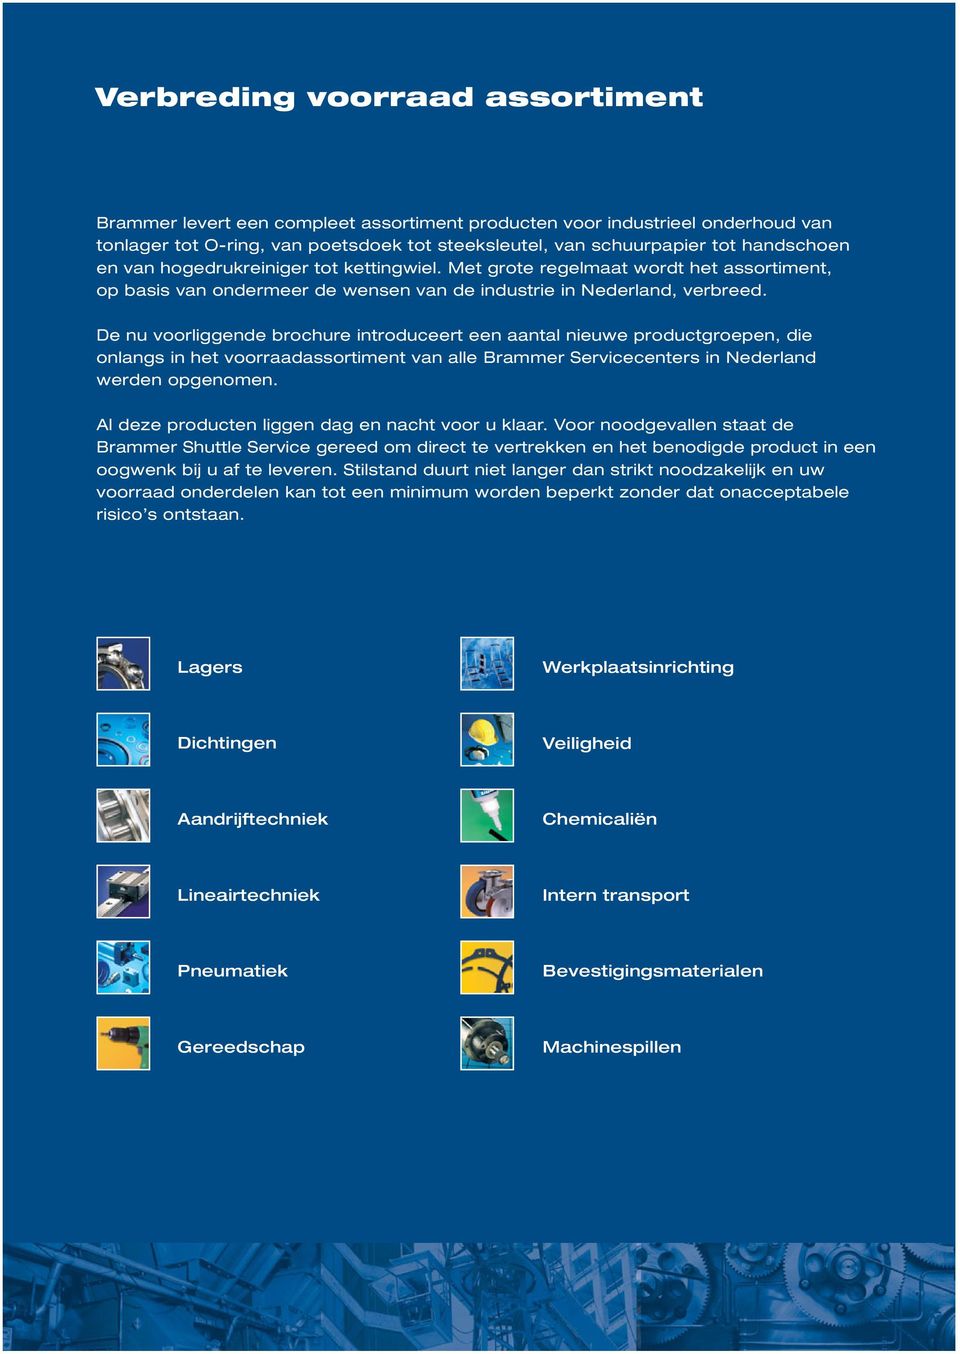 De nu voorliggende brochure introduceert een aantal nieuwe productgroepen, die onlangs in het voorraadassortiment van alle Brammer Servicecenters in Nederland werden opgenomen.